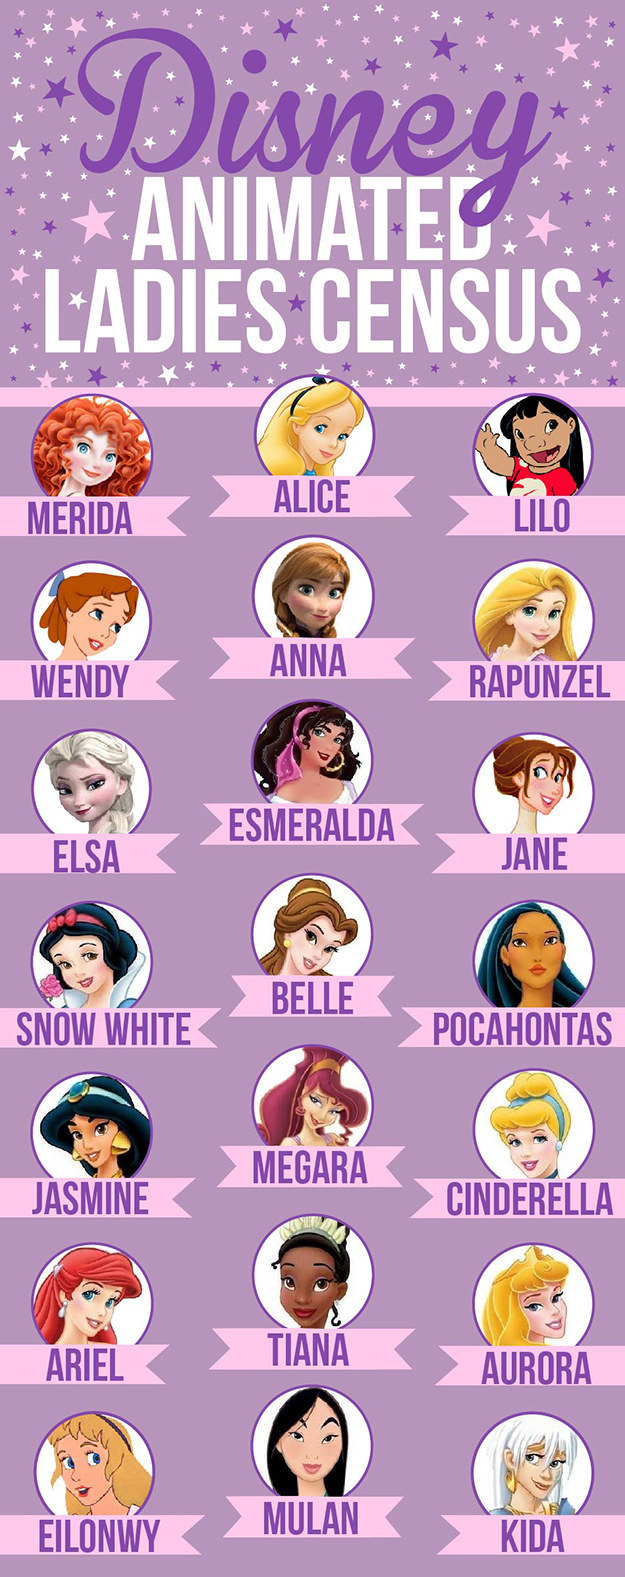 以下21位迪士尼(Disney)卡通女主角，就是这次分析的重点人物：